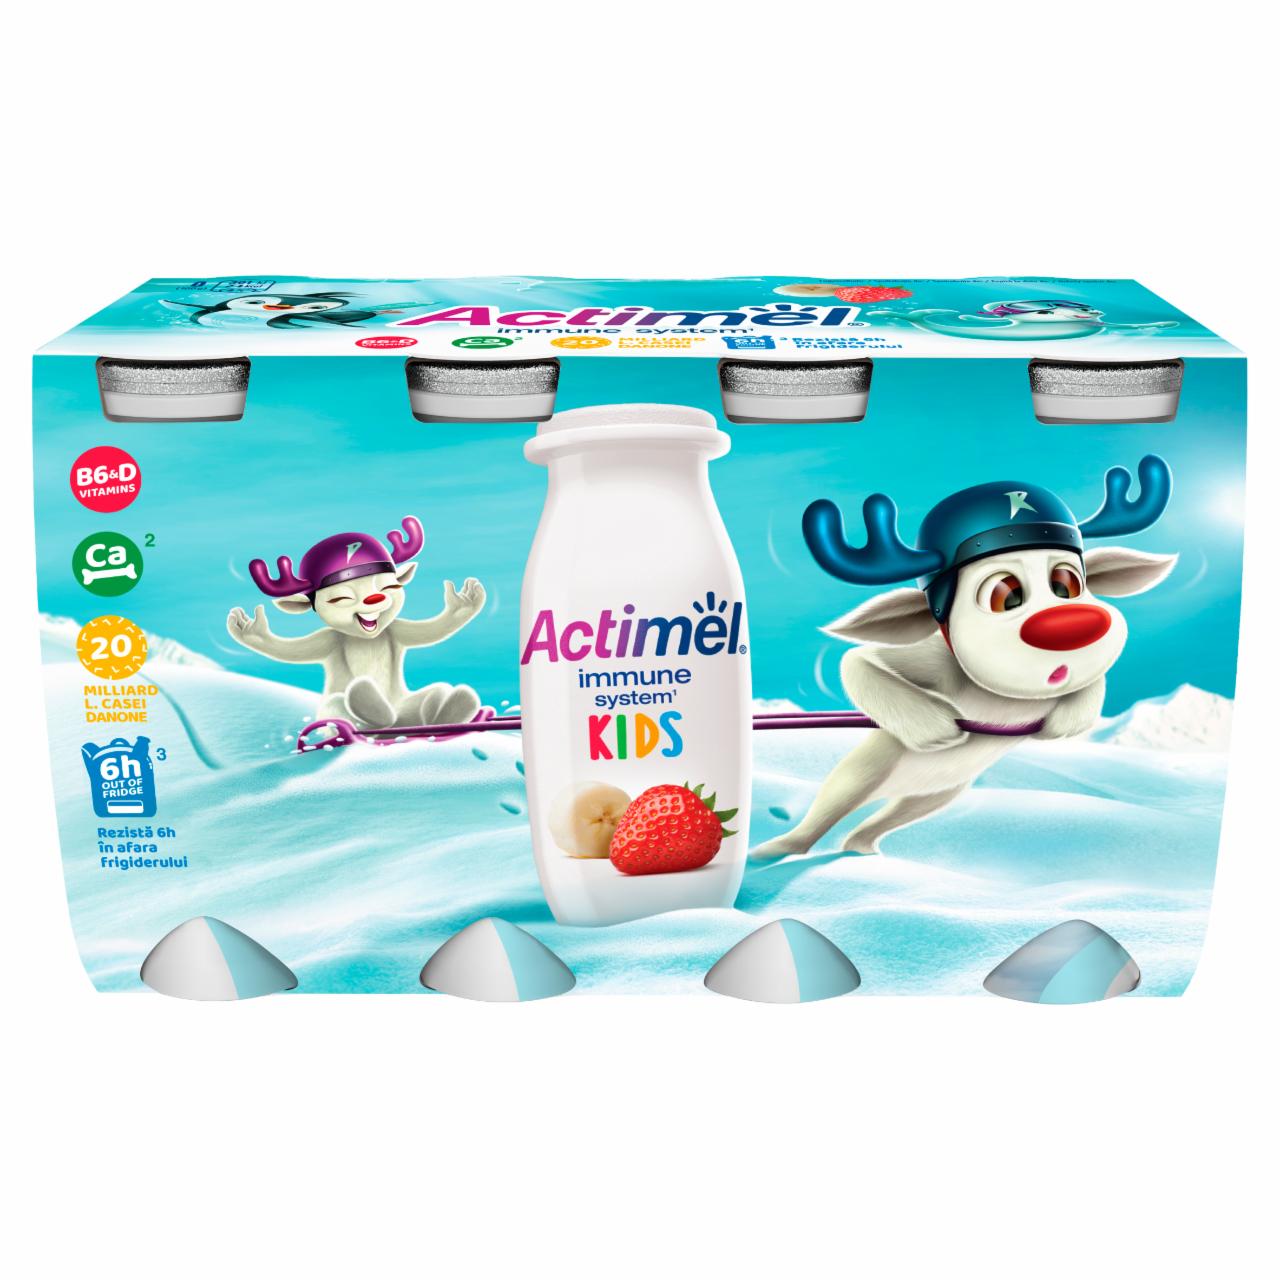 Képek - Danone Actimel Kids zsírszegény, élőflórás, eper-banánízű joghurtital 8 x 100 g (800 g)